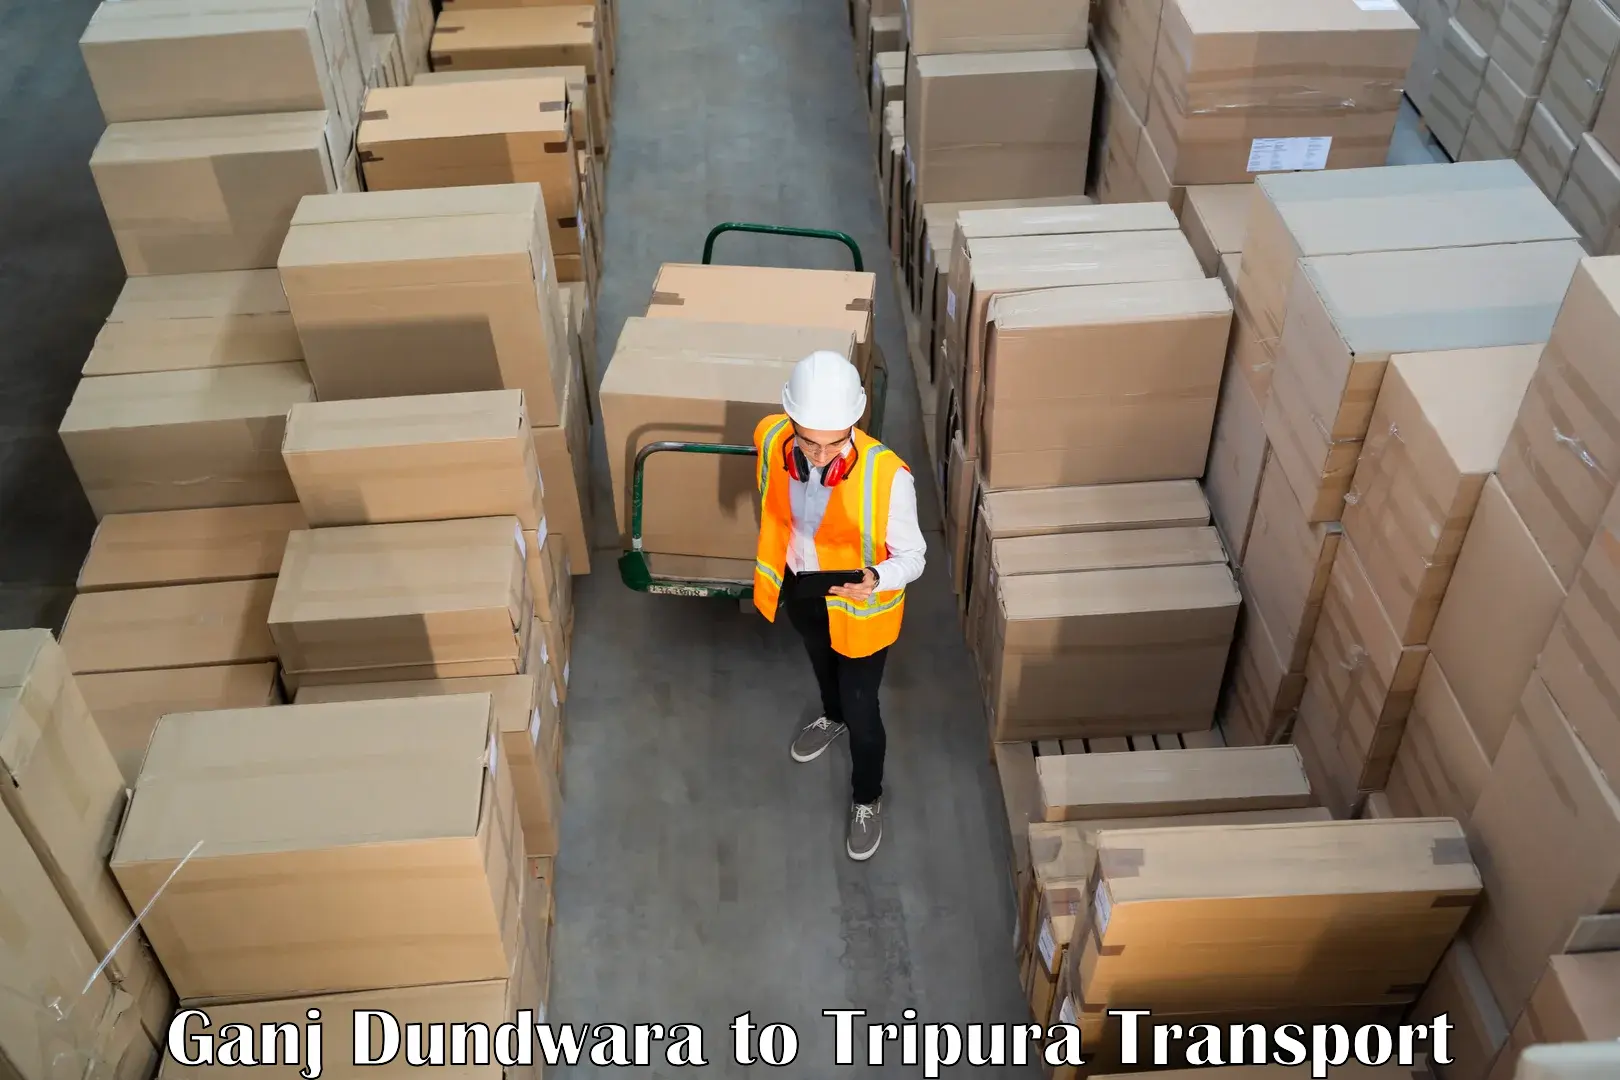 Shipping partner Ganj Dundwara to Tripura